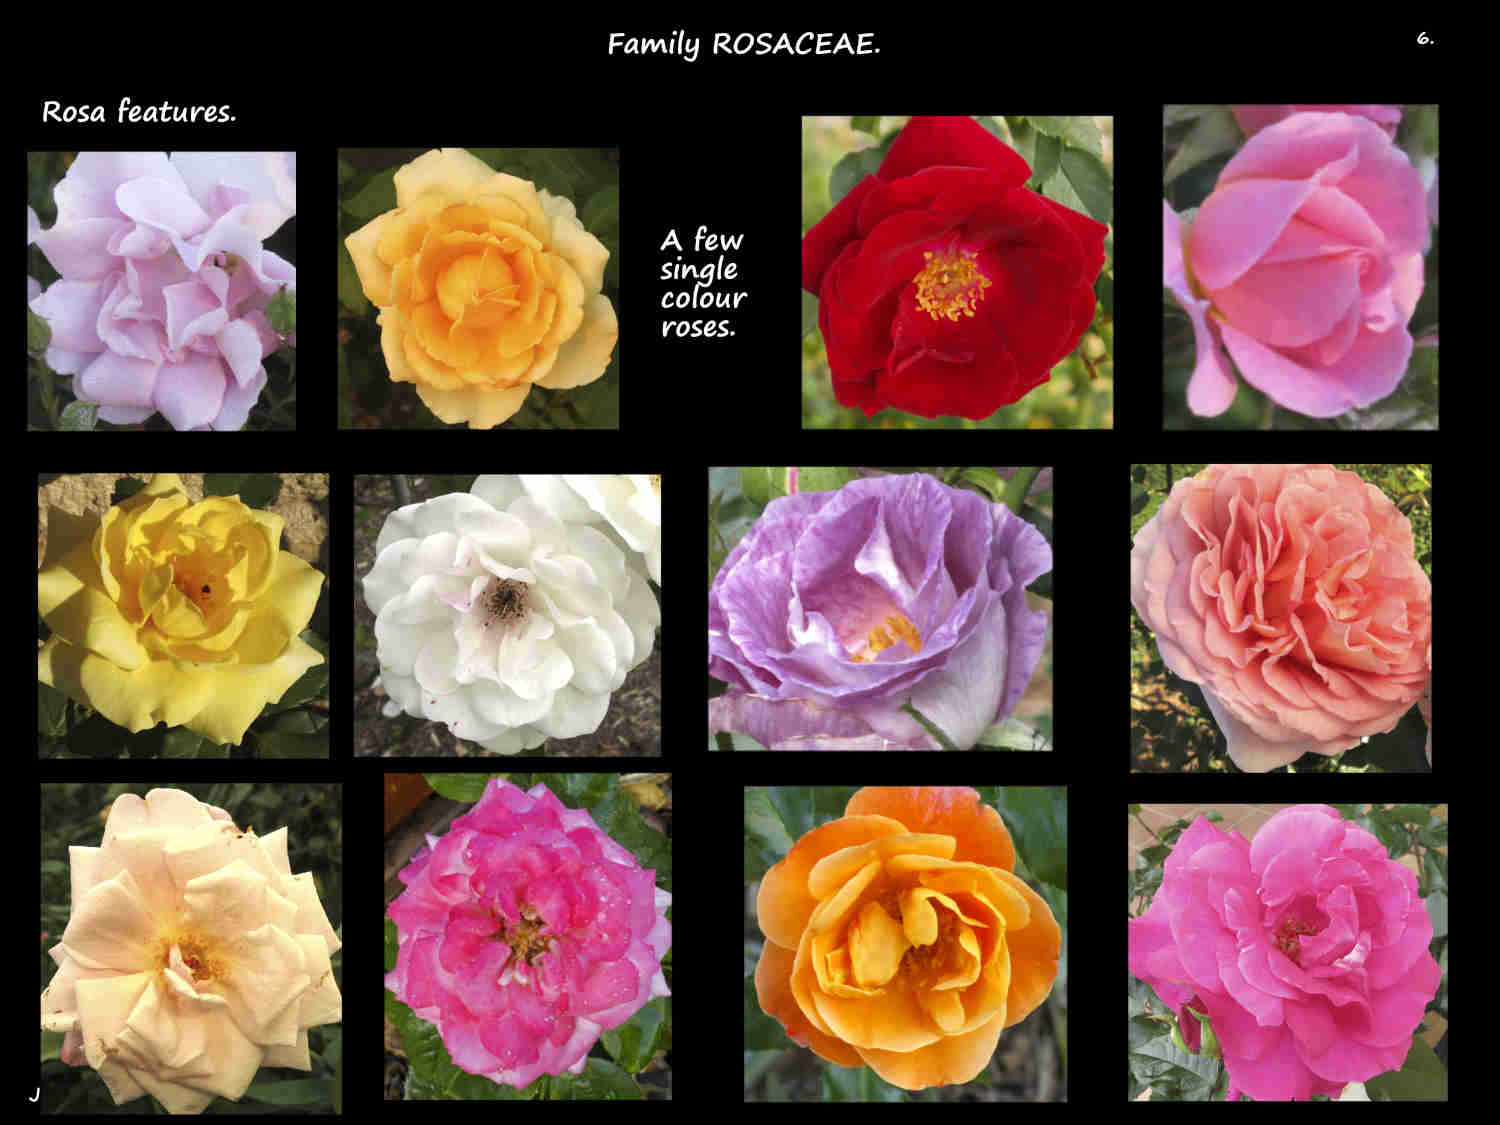 6 Single colour roses